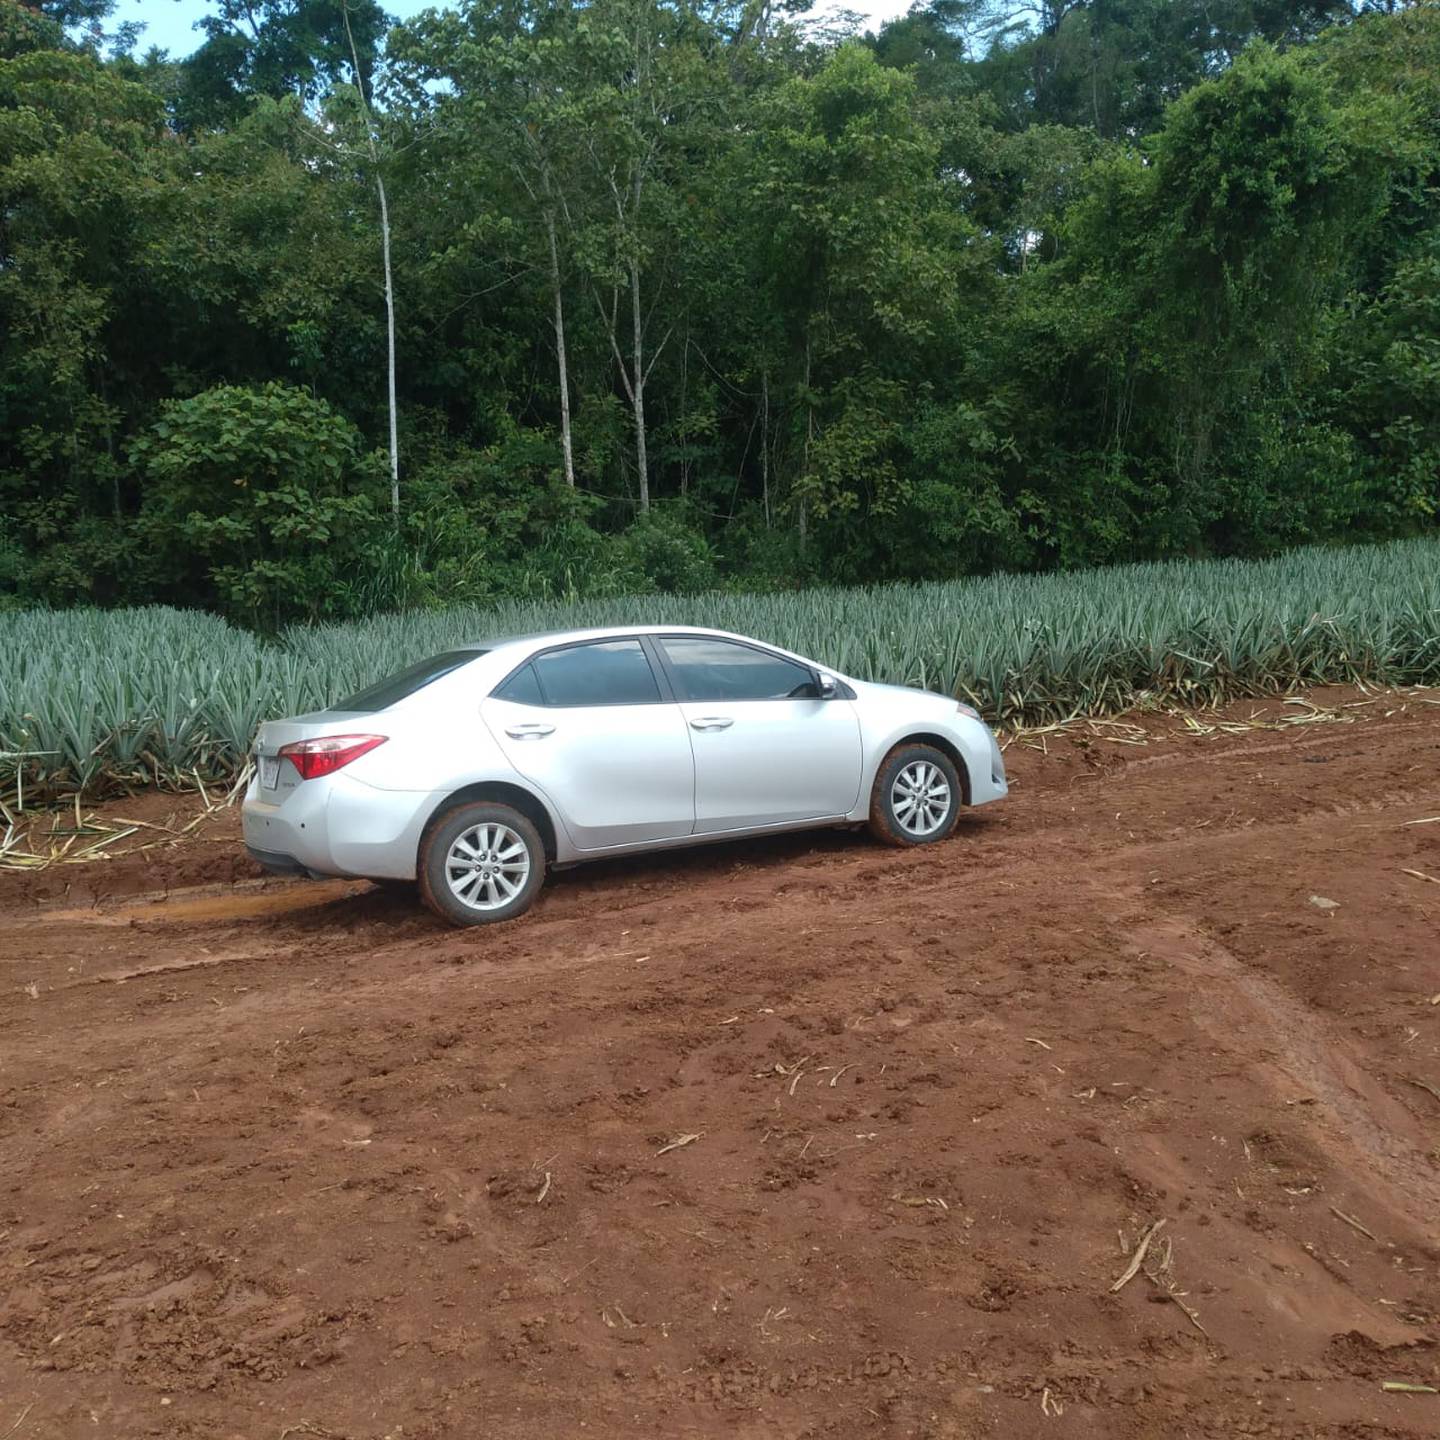 El carro fue encontrado en uno de los callejones de la finca piñera. Foto Guana Noticias.